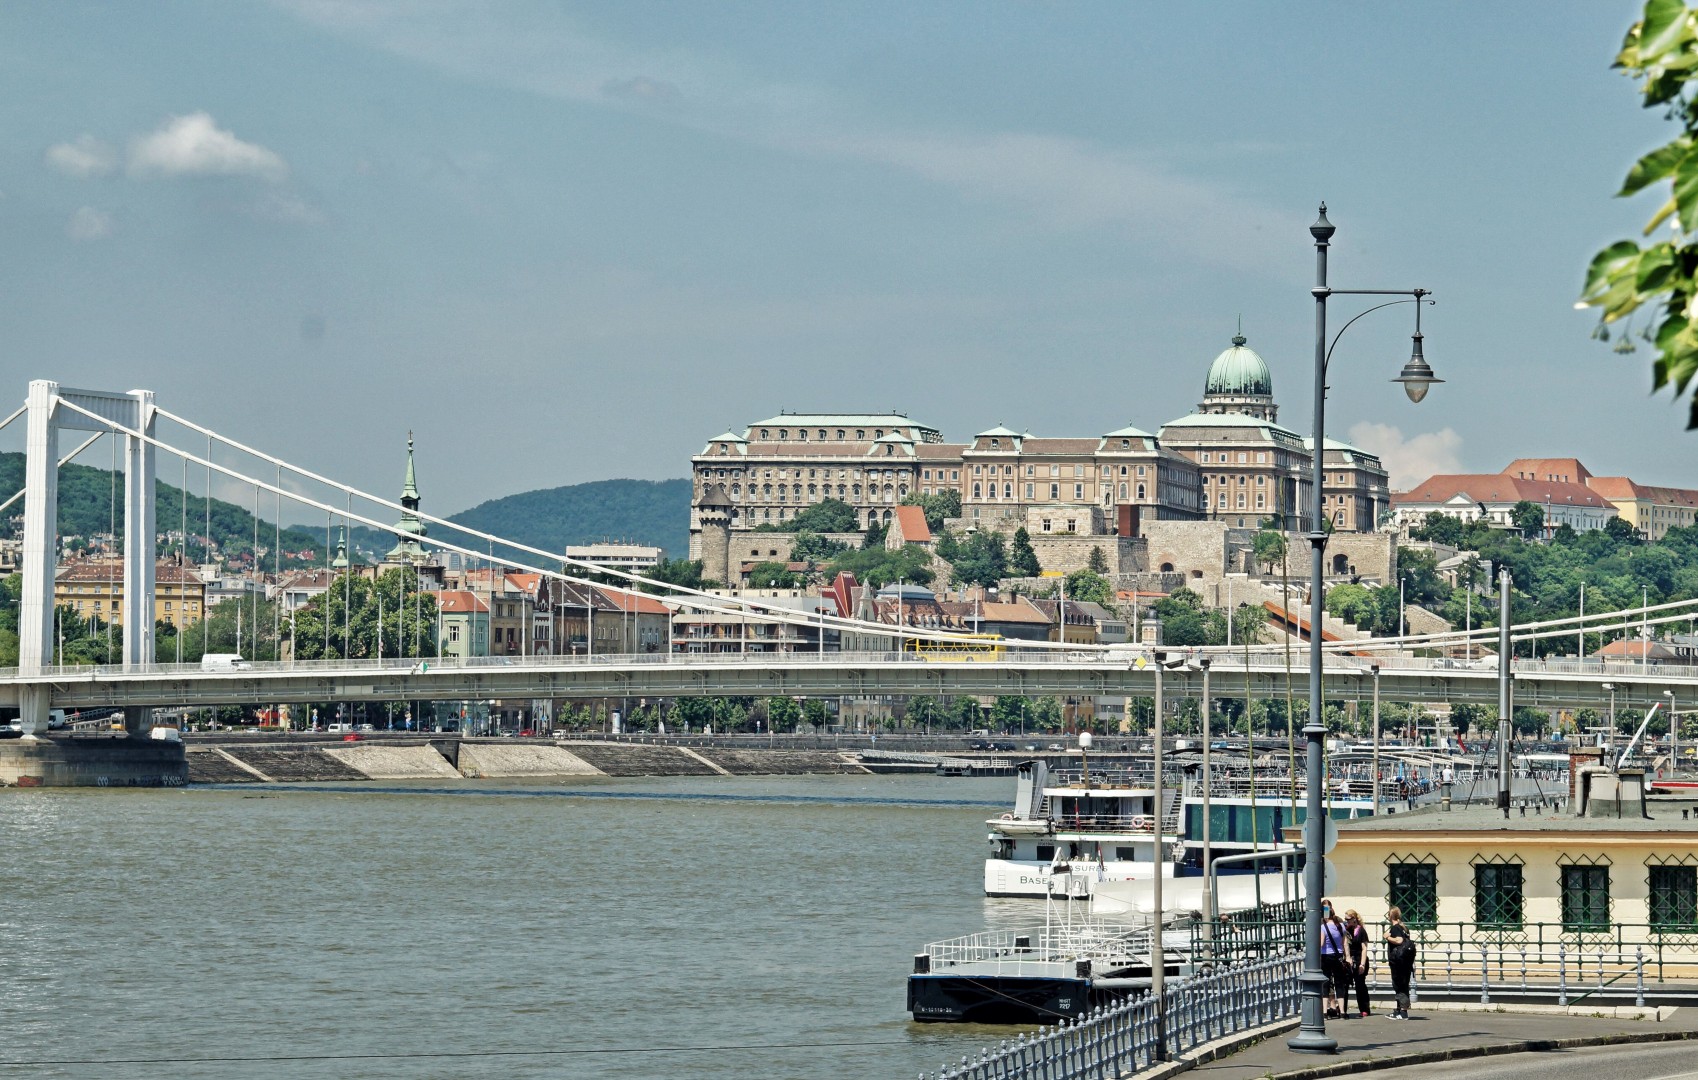 weekend w Budapeszcie